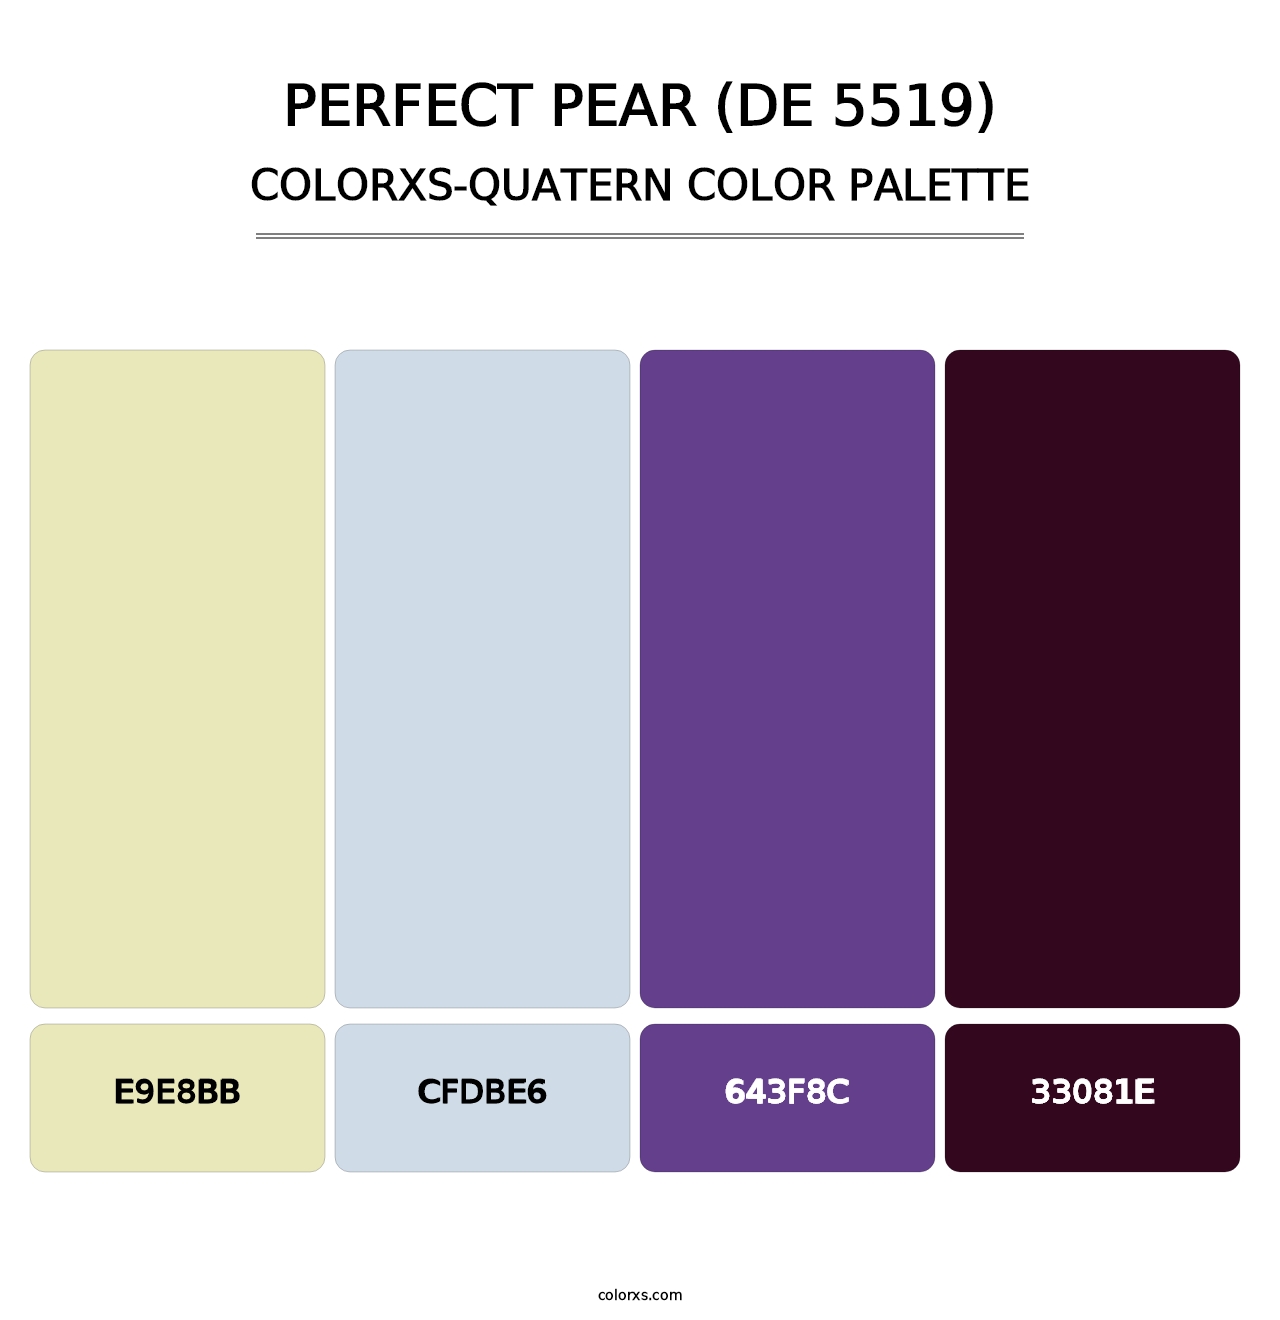 Perfect Pear (DE 5519) - Colorxs Quatern Palette